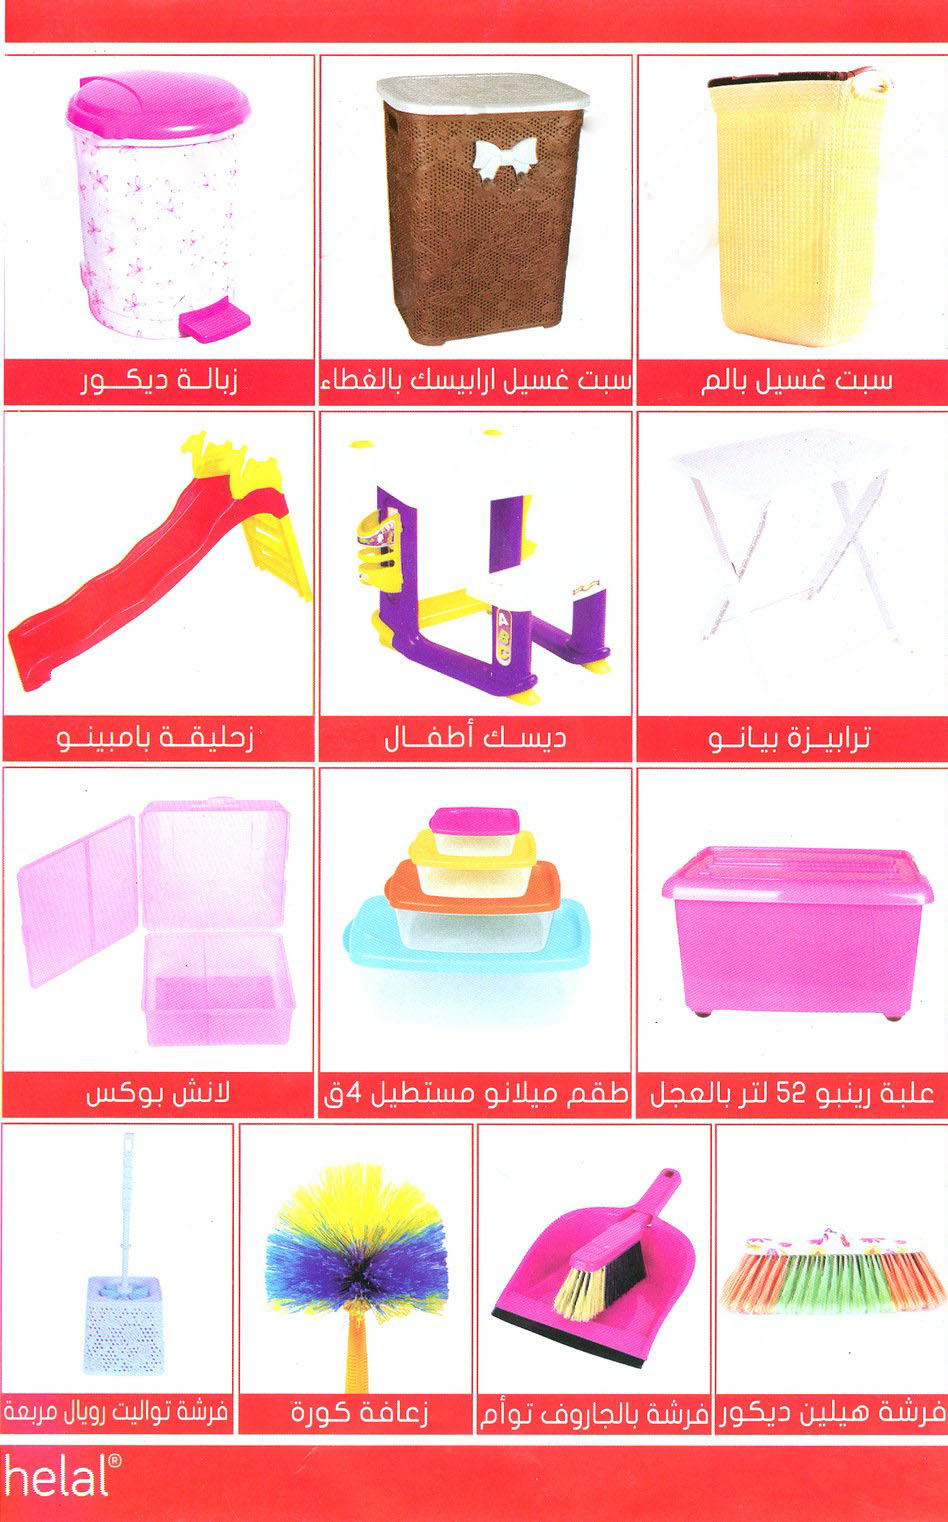  معرض القاهرة الدولى للادوات المنزلية 2018 بارض المعارض